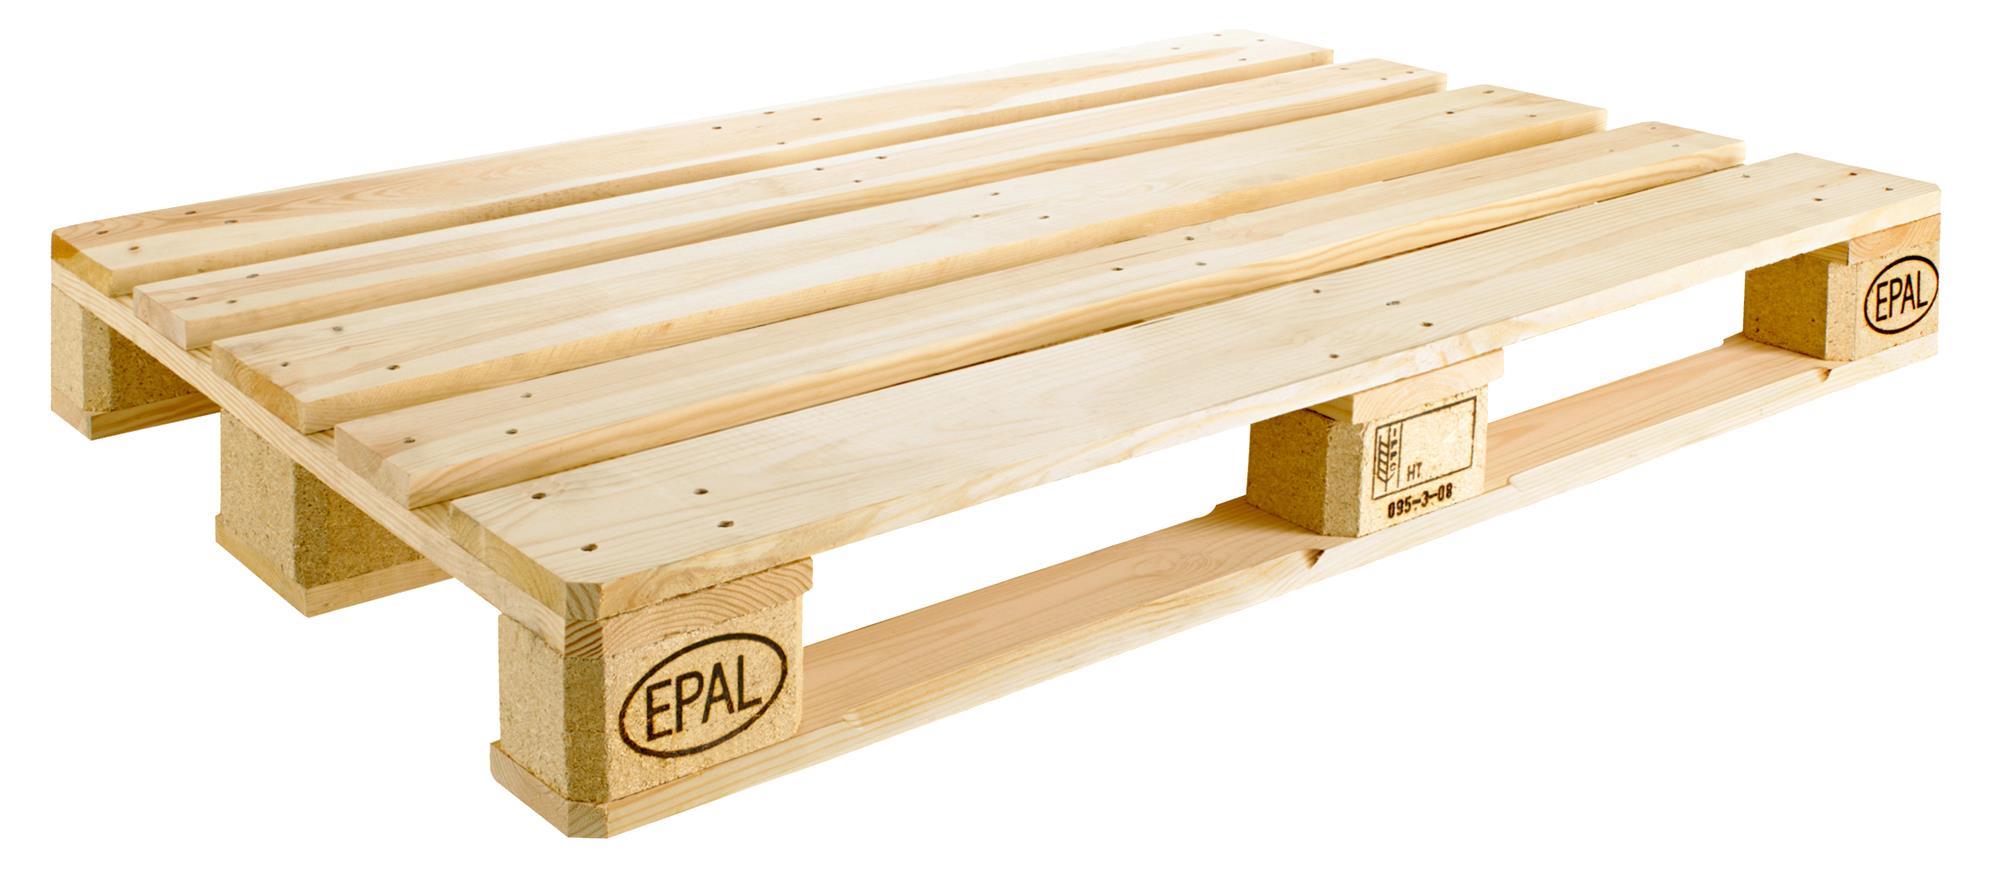 EPAL Europallet - Producten